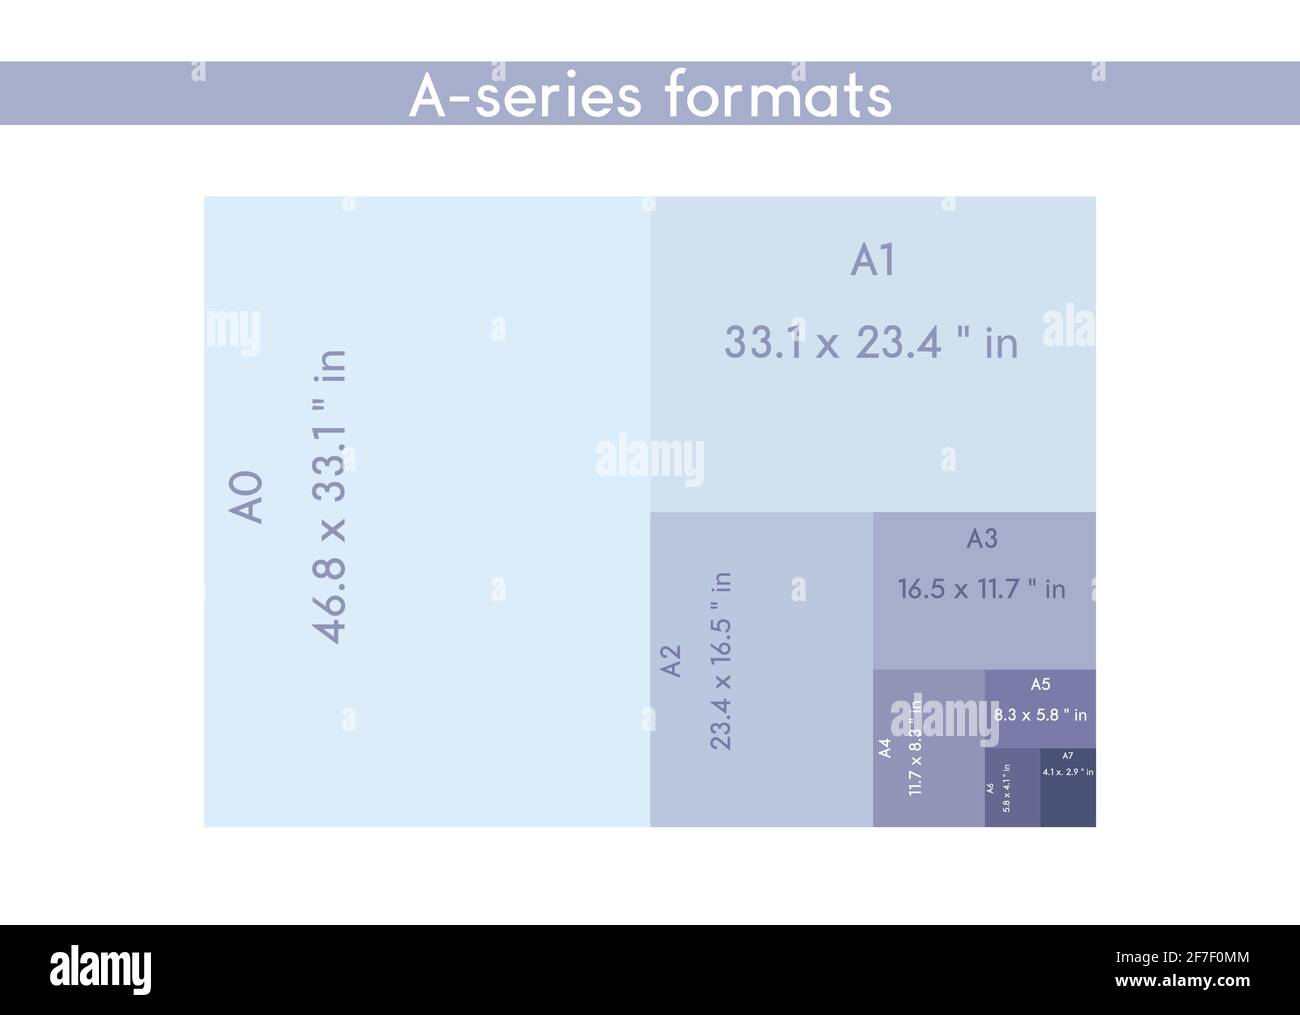 Tamaño de los formatos de papel de la serie a, A0 A1 A2 A3 A4 A5 A6 A7 con  etiquetas y dimensiones en pulgadas. El tamaño de papel ISO estándar  internacional es